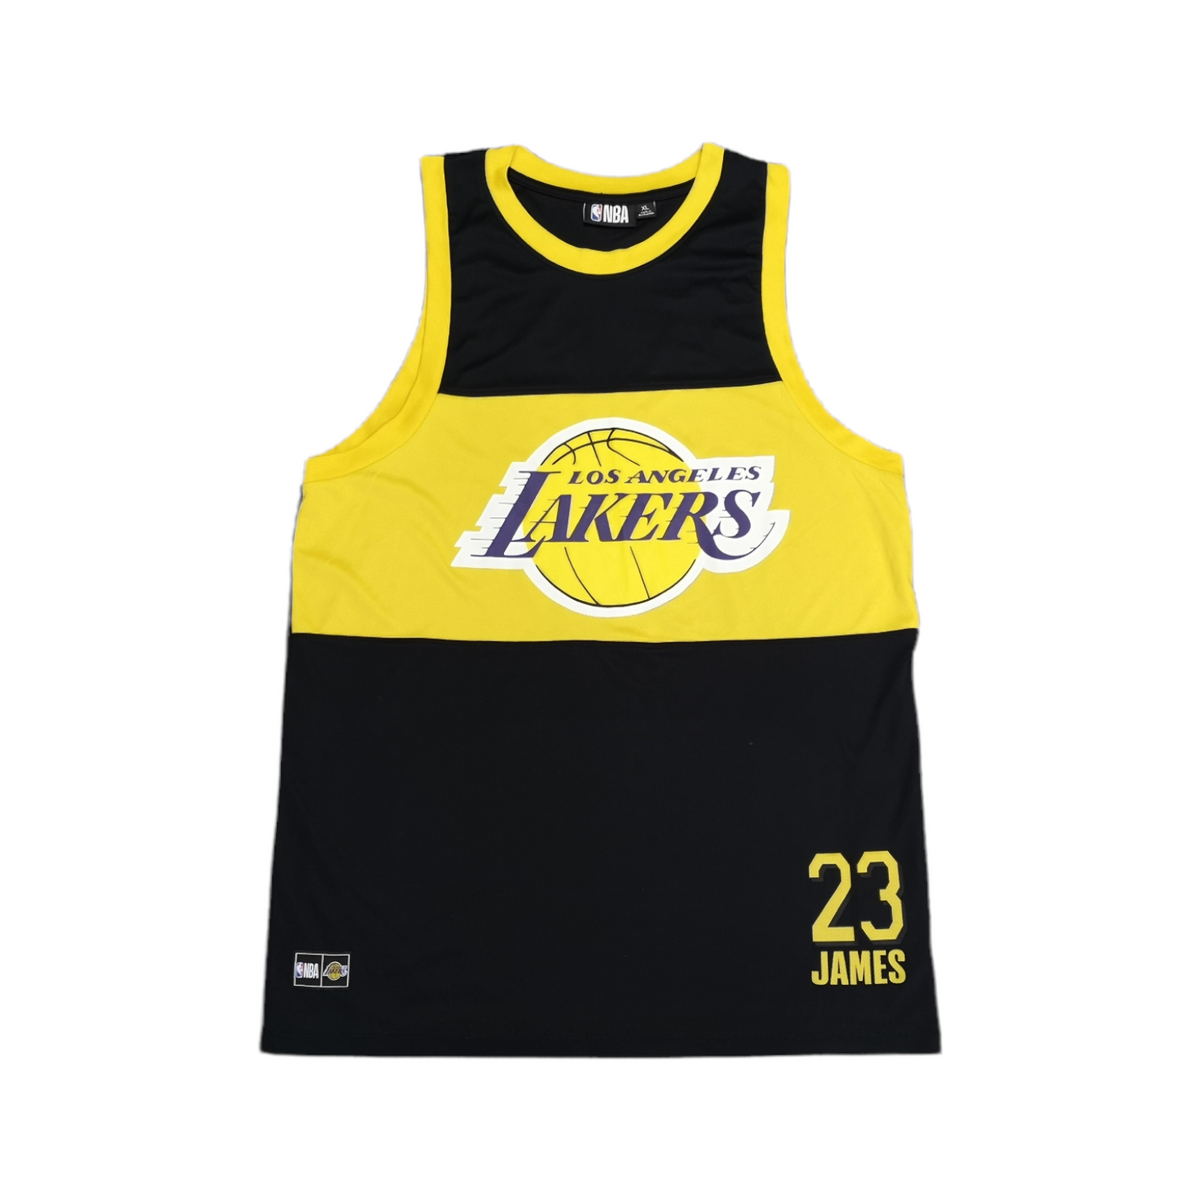 NBA LA Lakers Basketball Jersey Size XL